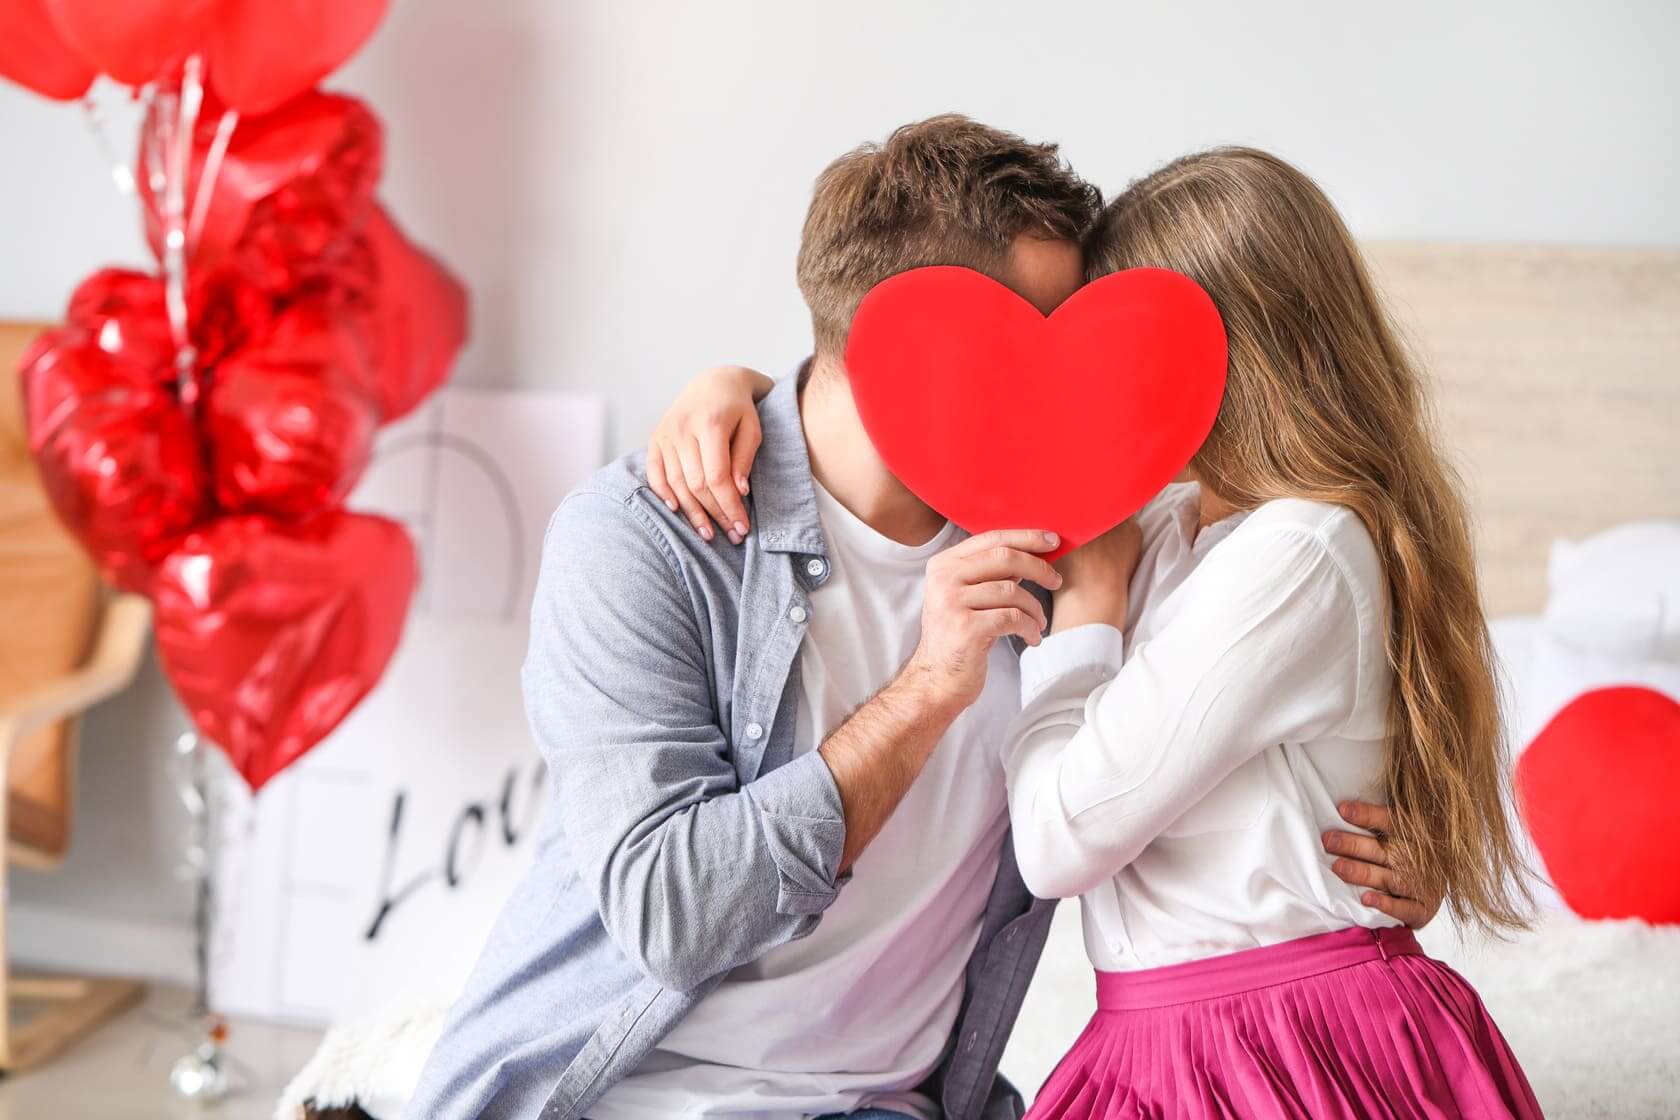 San Valentino 2022, idee regalo originali per lui e per lei - Style